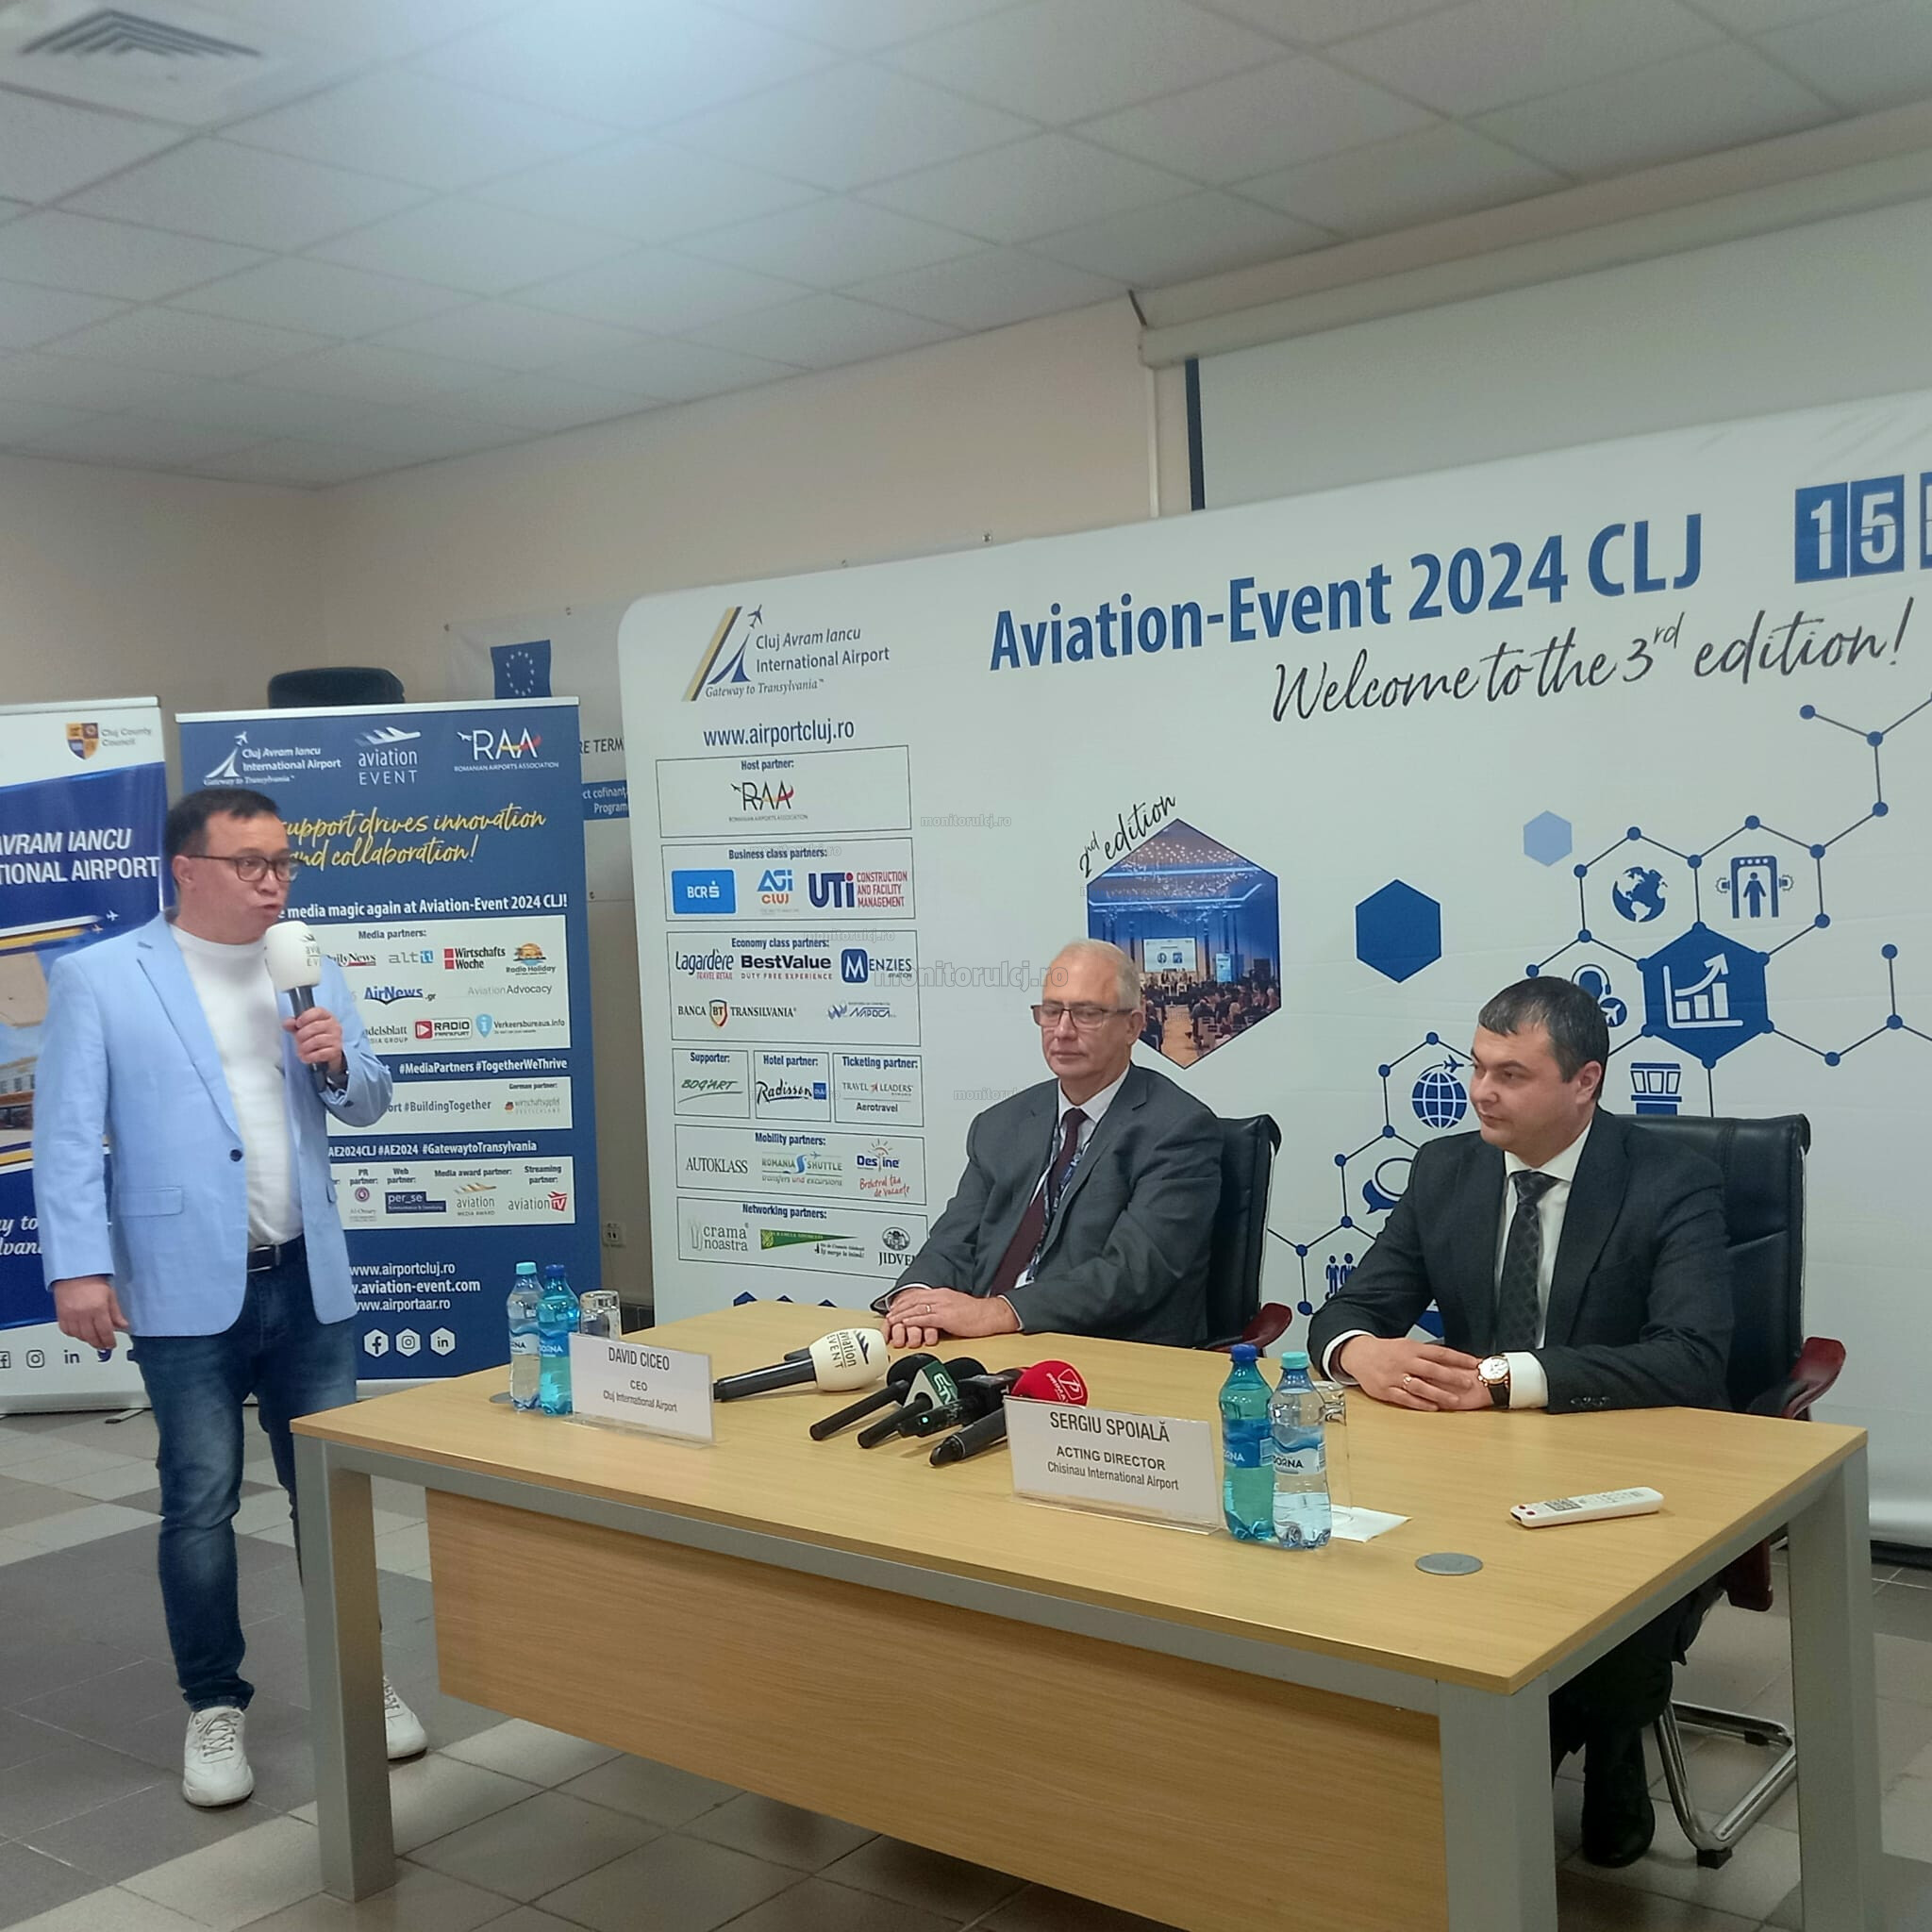 Zeci de specialiști în aviație dezbat subiectele momentului la Aviation Event 2024 CLJ. FOTO: monitorulcj.ro